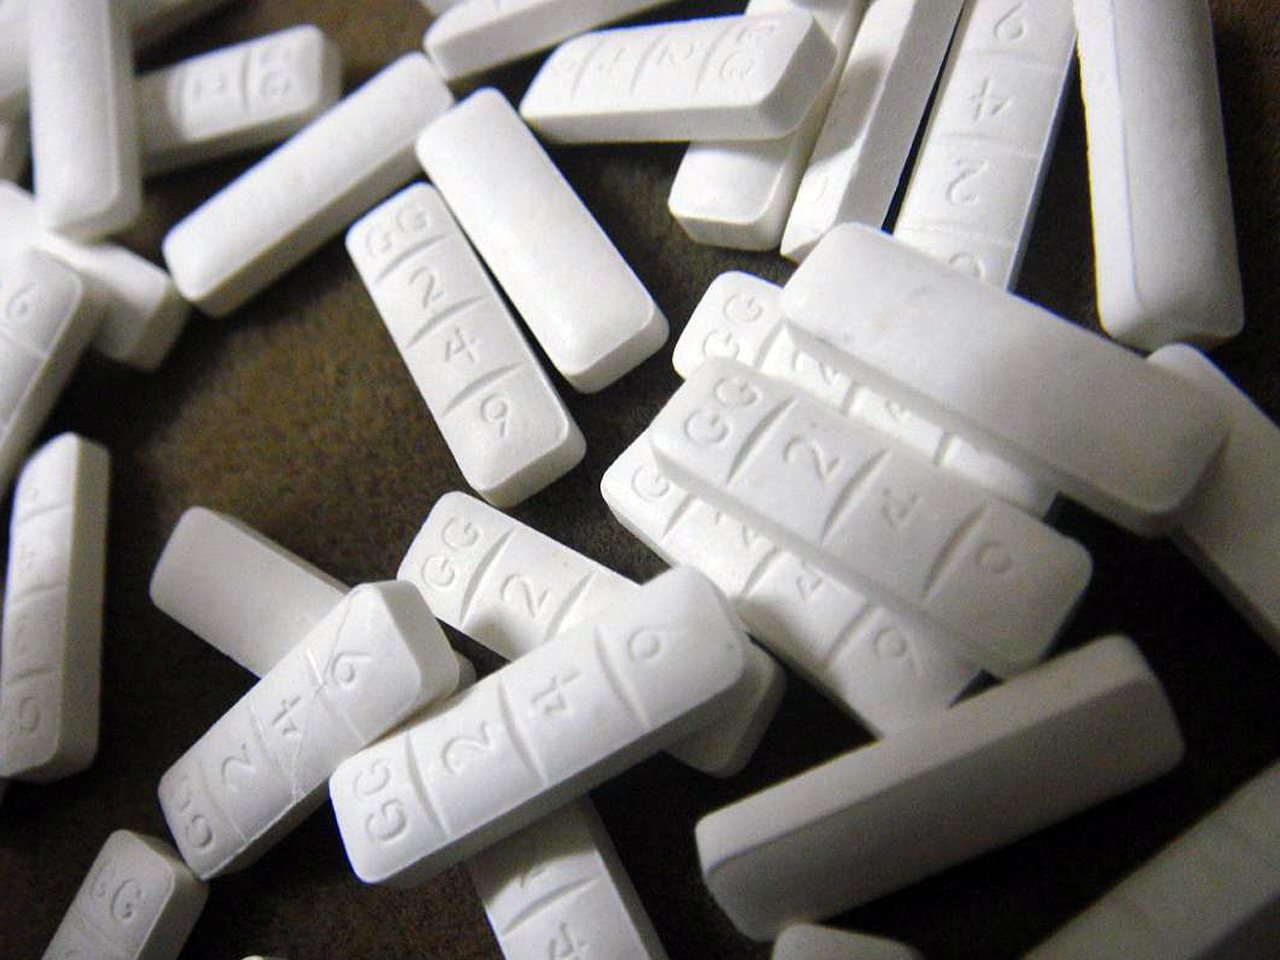 How common is xanax overdose